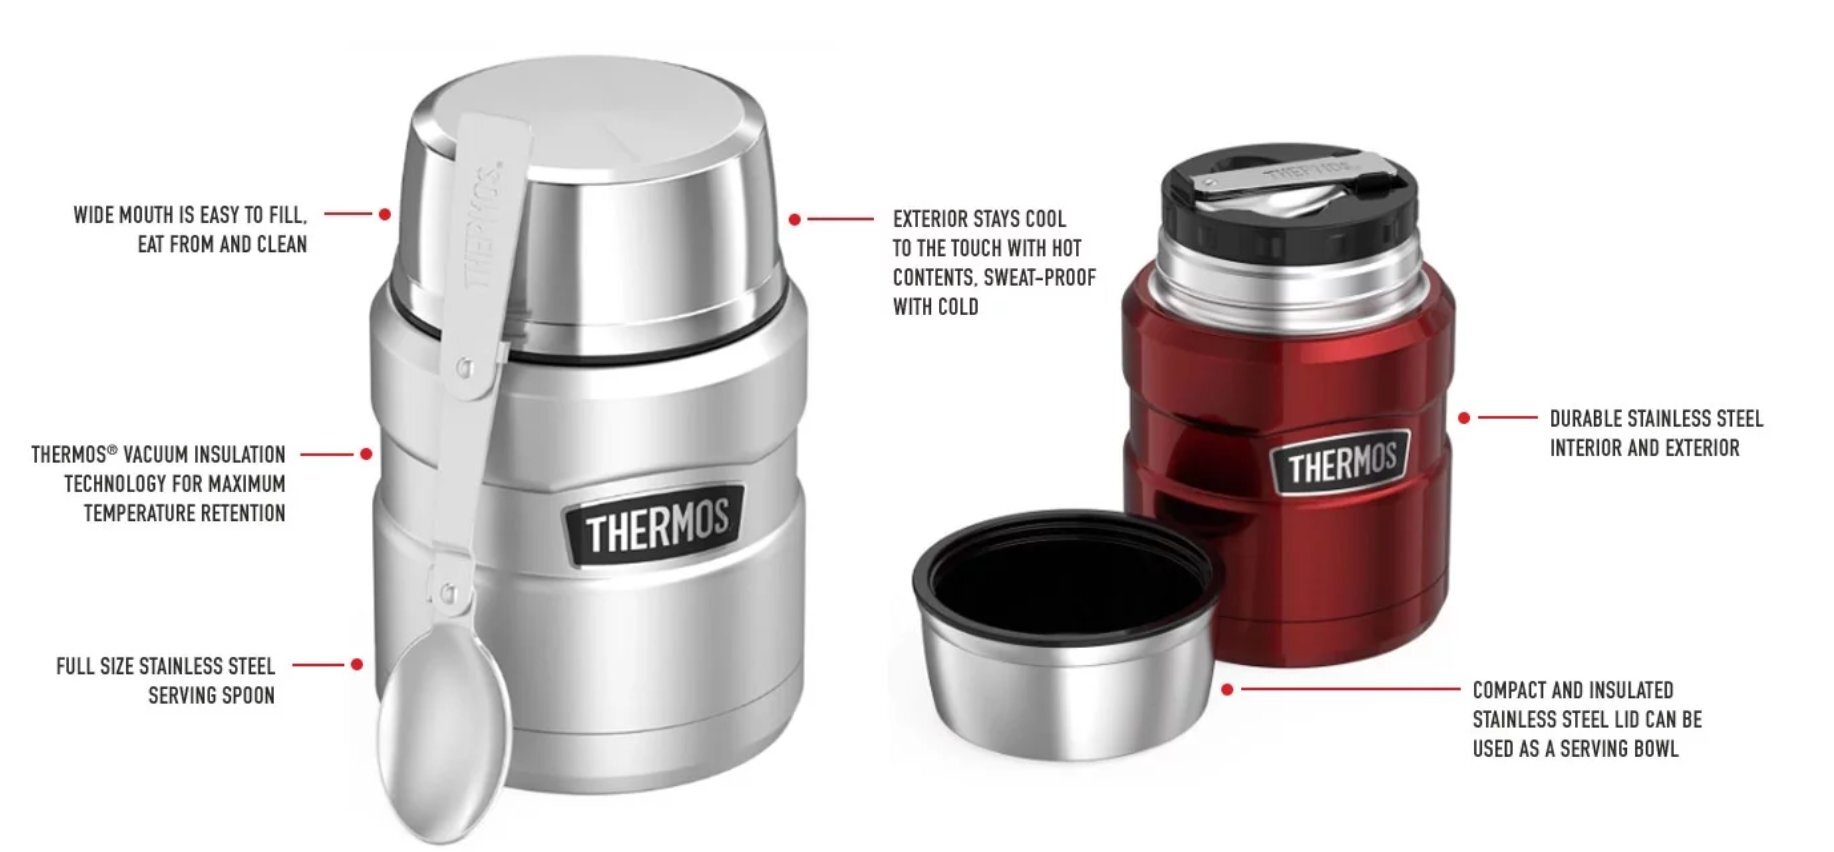 Maistinis termosas Thermos, THSK3000CR, 470 ml kaina | pigu.lt